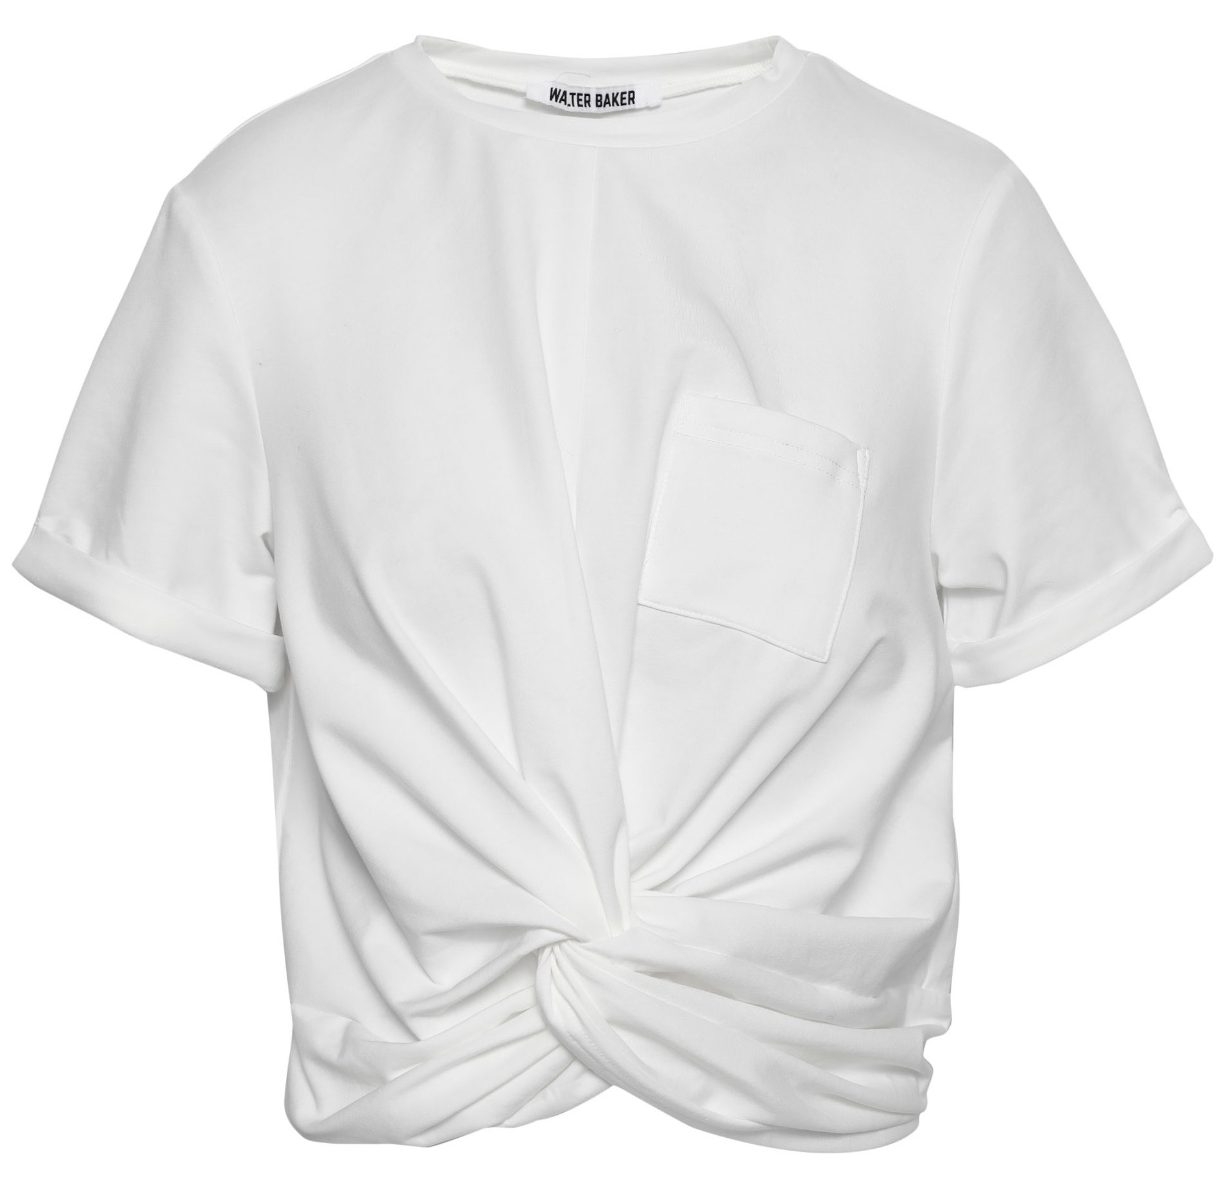 Как правильно выбрать: идеальная белая футболка для каждого типа тела